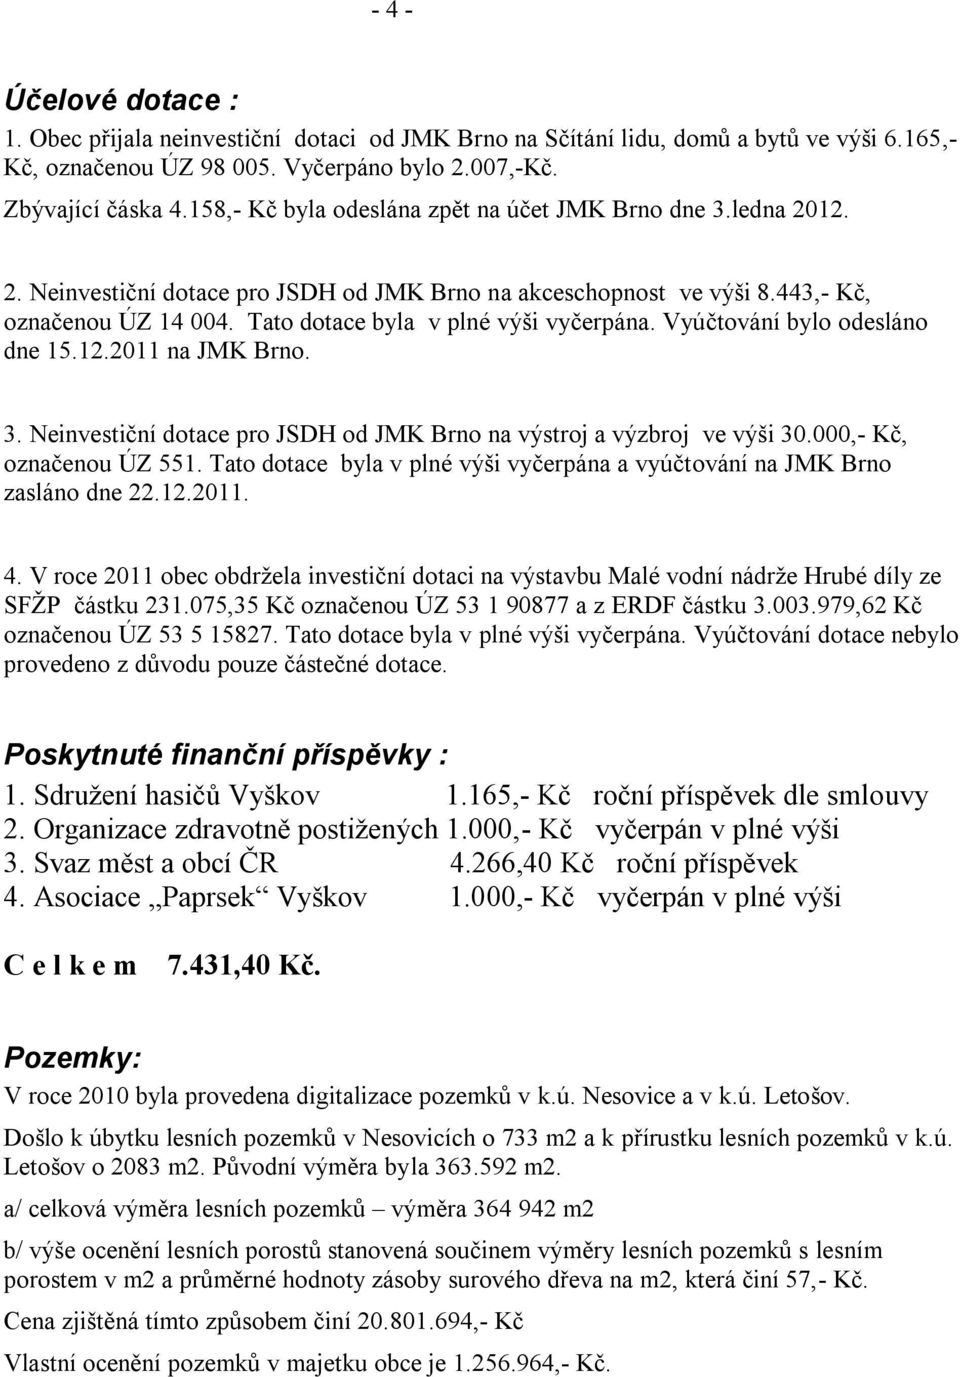 Tato dotace byla v plné výši vyčerpána. Vyúčtování bylo odesláno dne 15.12.2011 na JMK Brno. 3. Neinvestiční dotace pro JSDH od JMK Brno na výstroj a výzbroj ve výši 30.000,- Kč, označenou ÚZ 551.